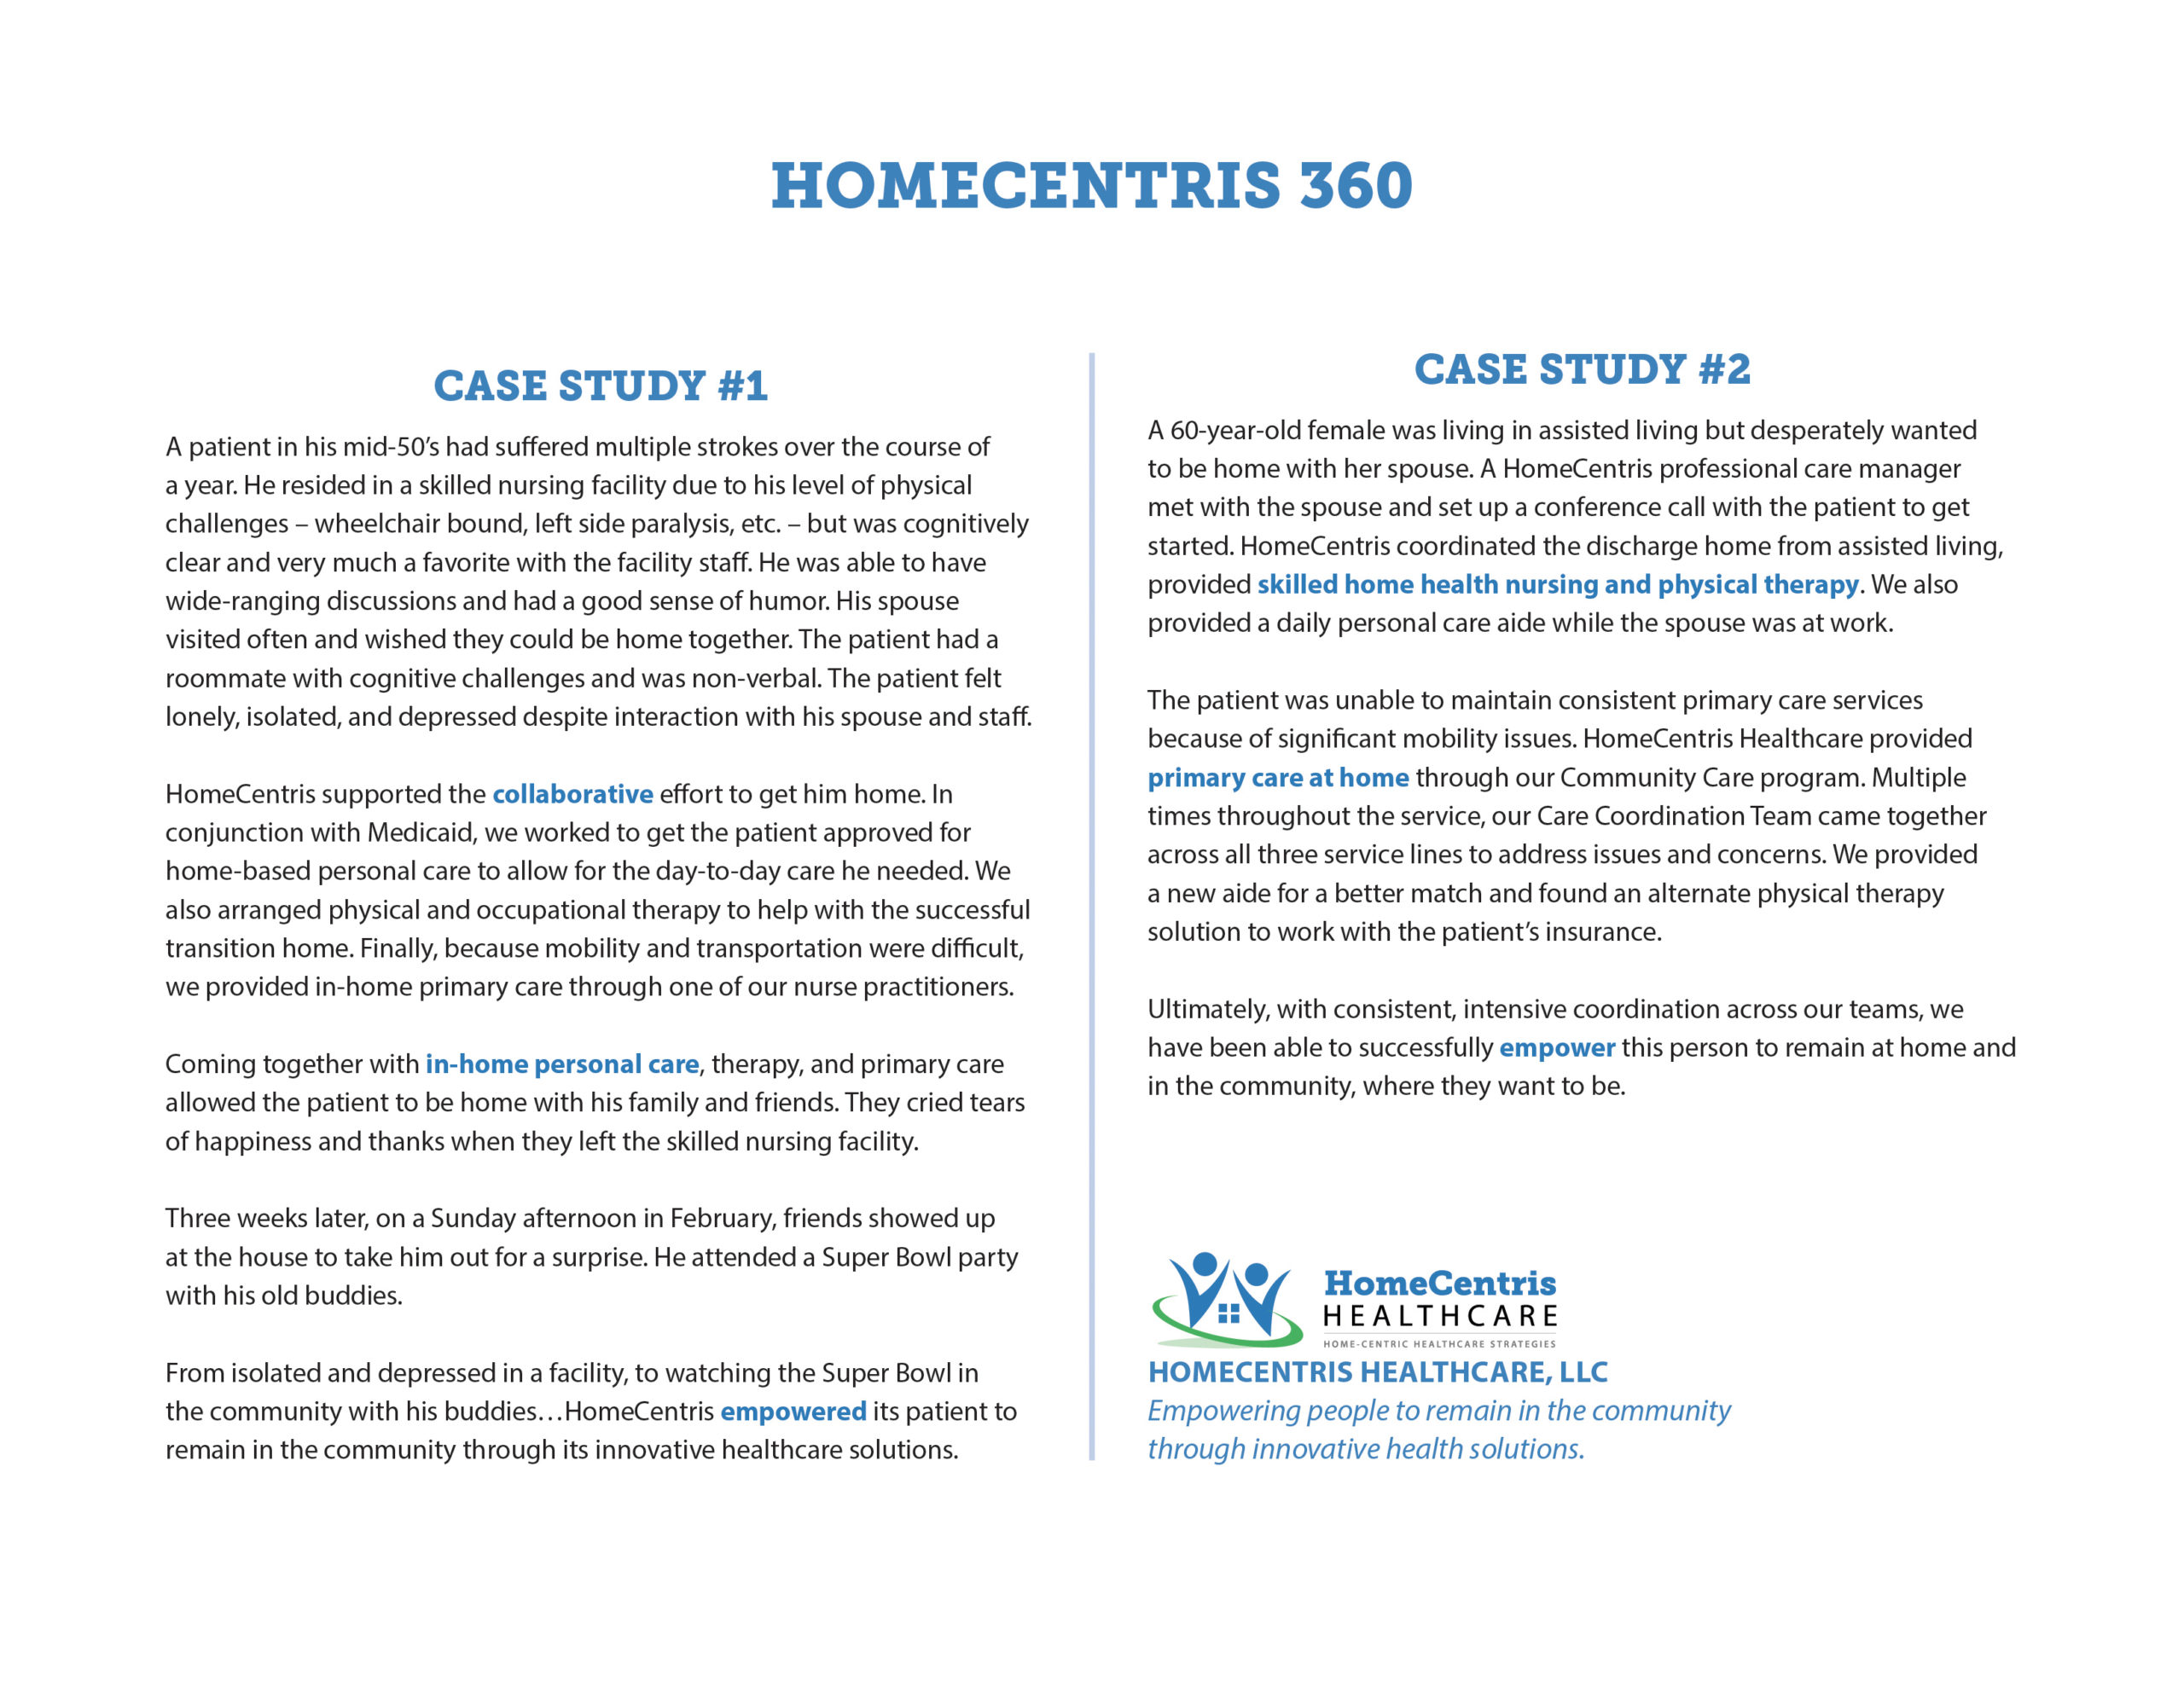 Case Studies of HomeCentris 360